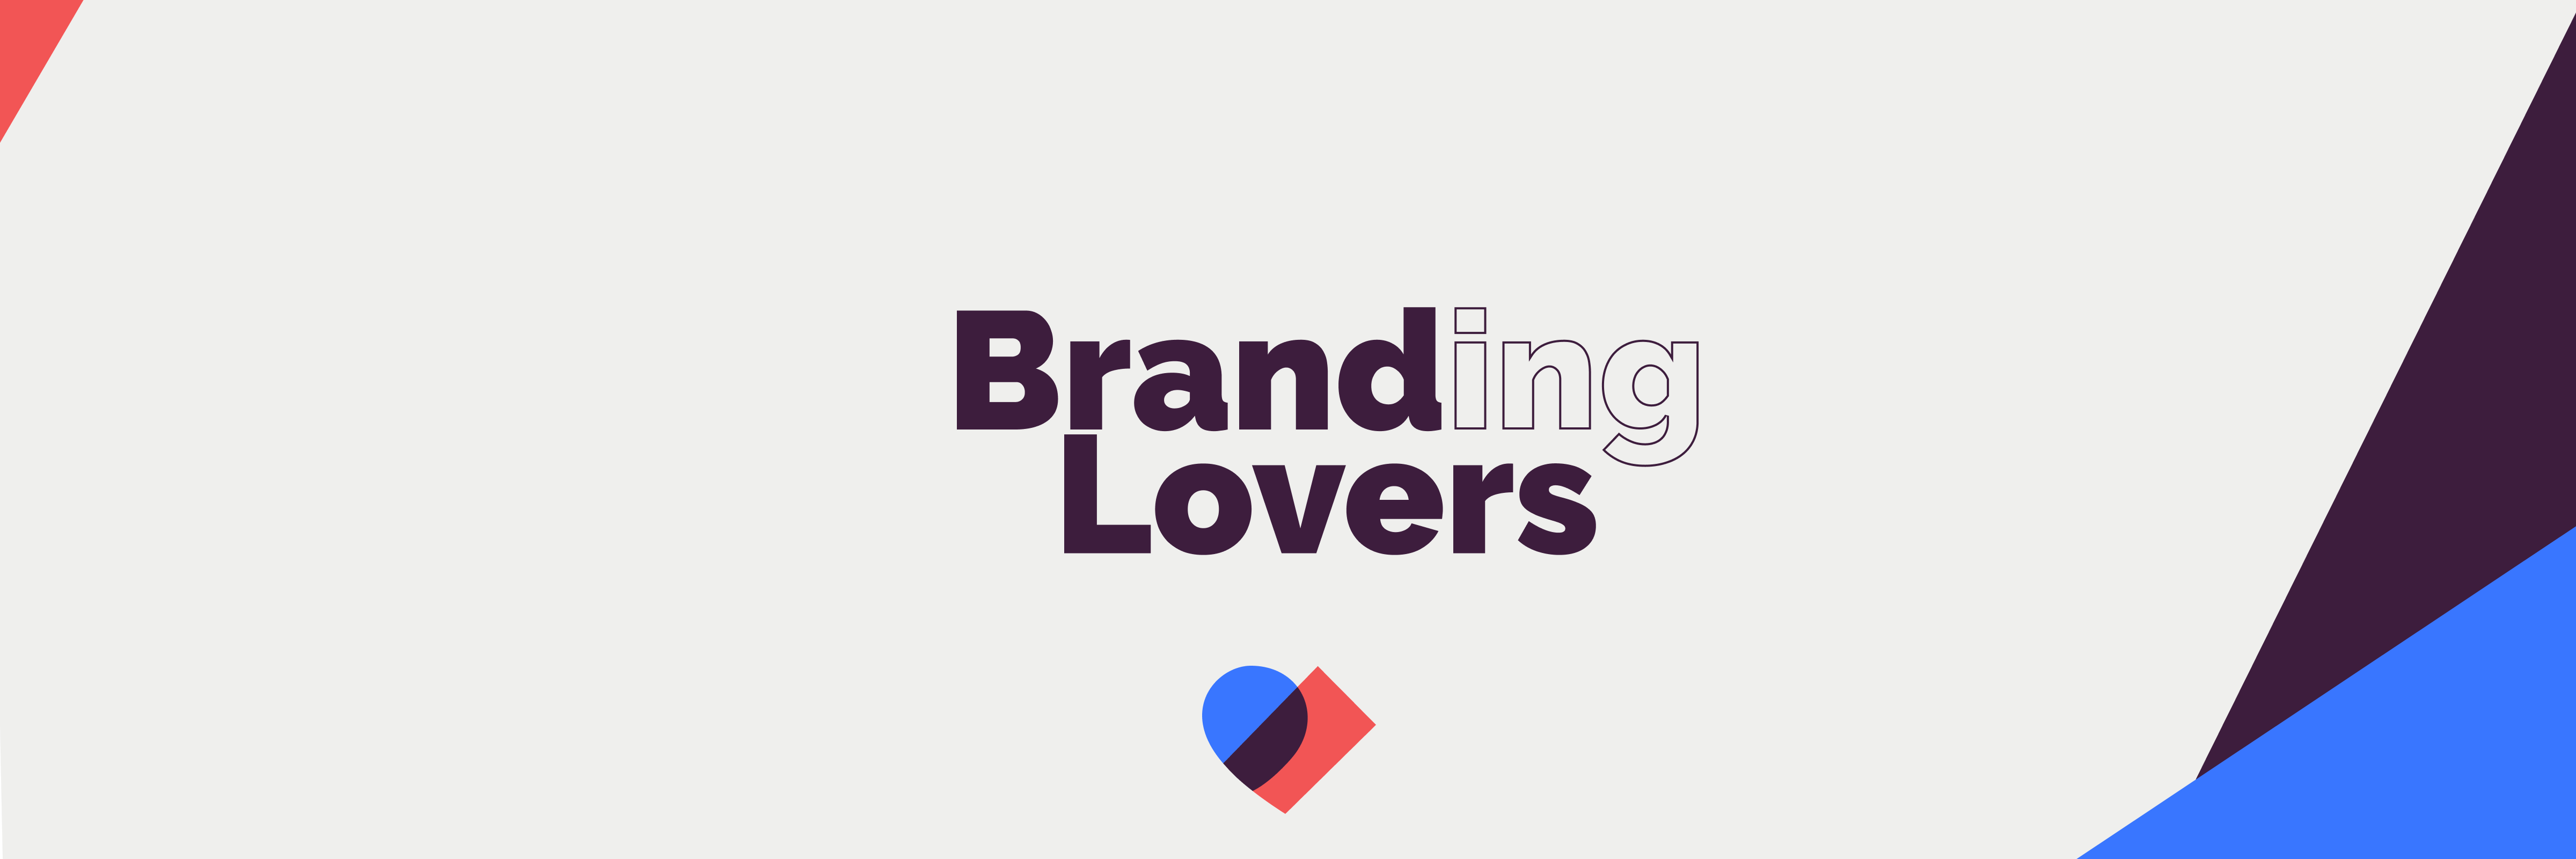 Branding lovers by Purple Metrics